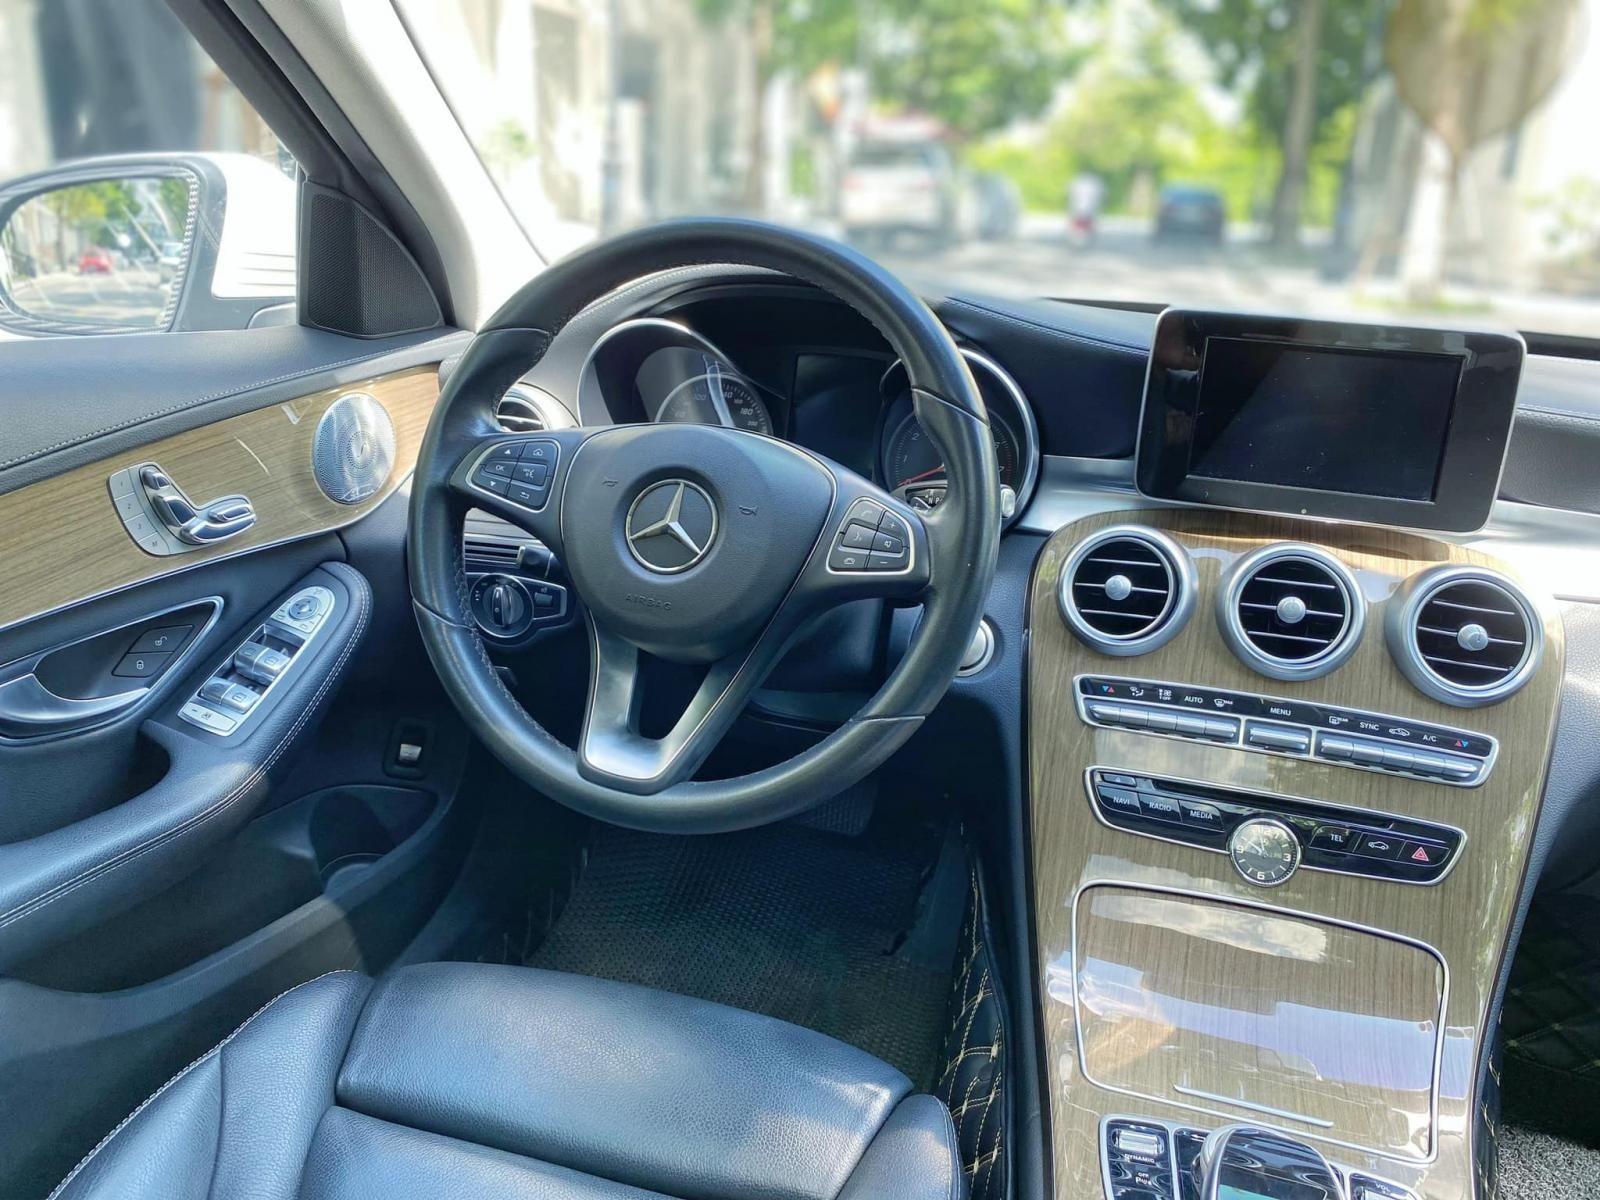 Mercedes-Benz C 250 2017 - 1 chủ mua mới từ đầu